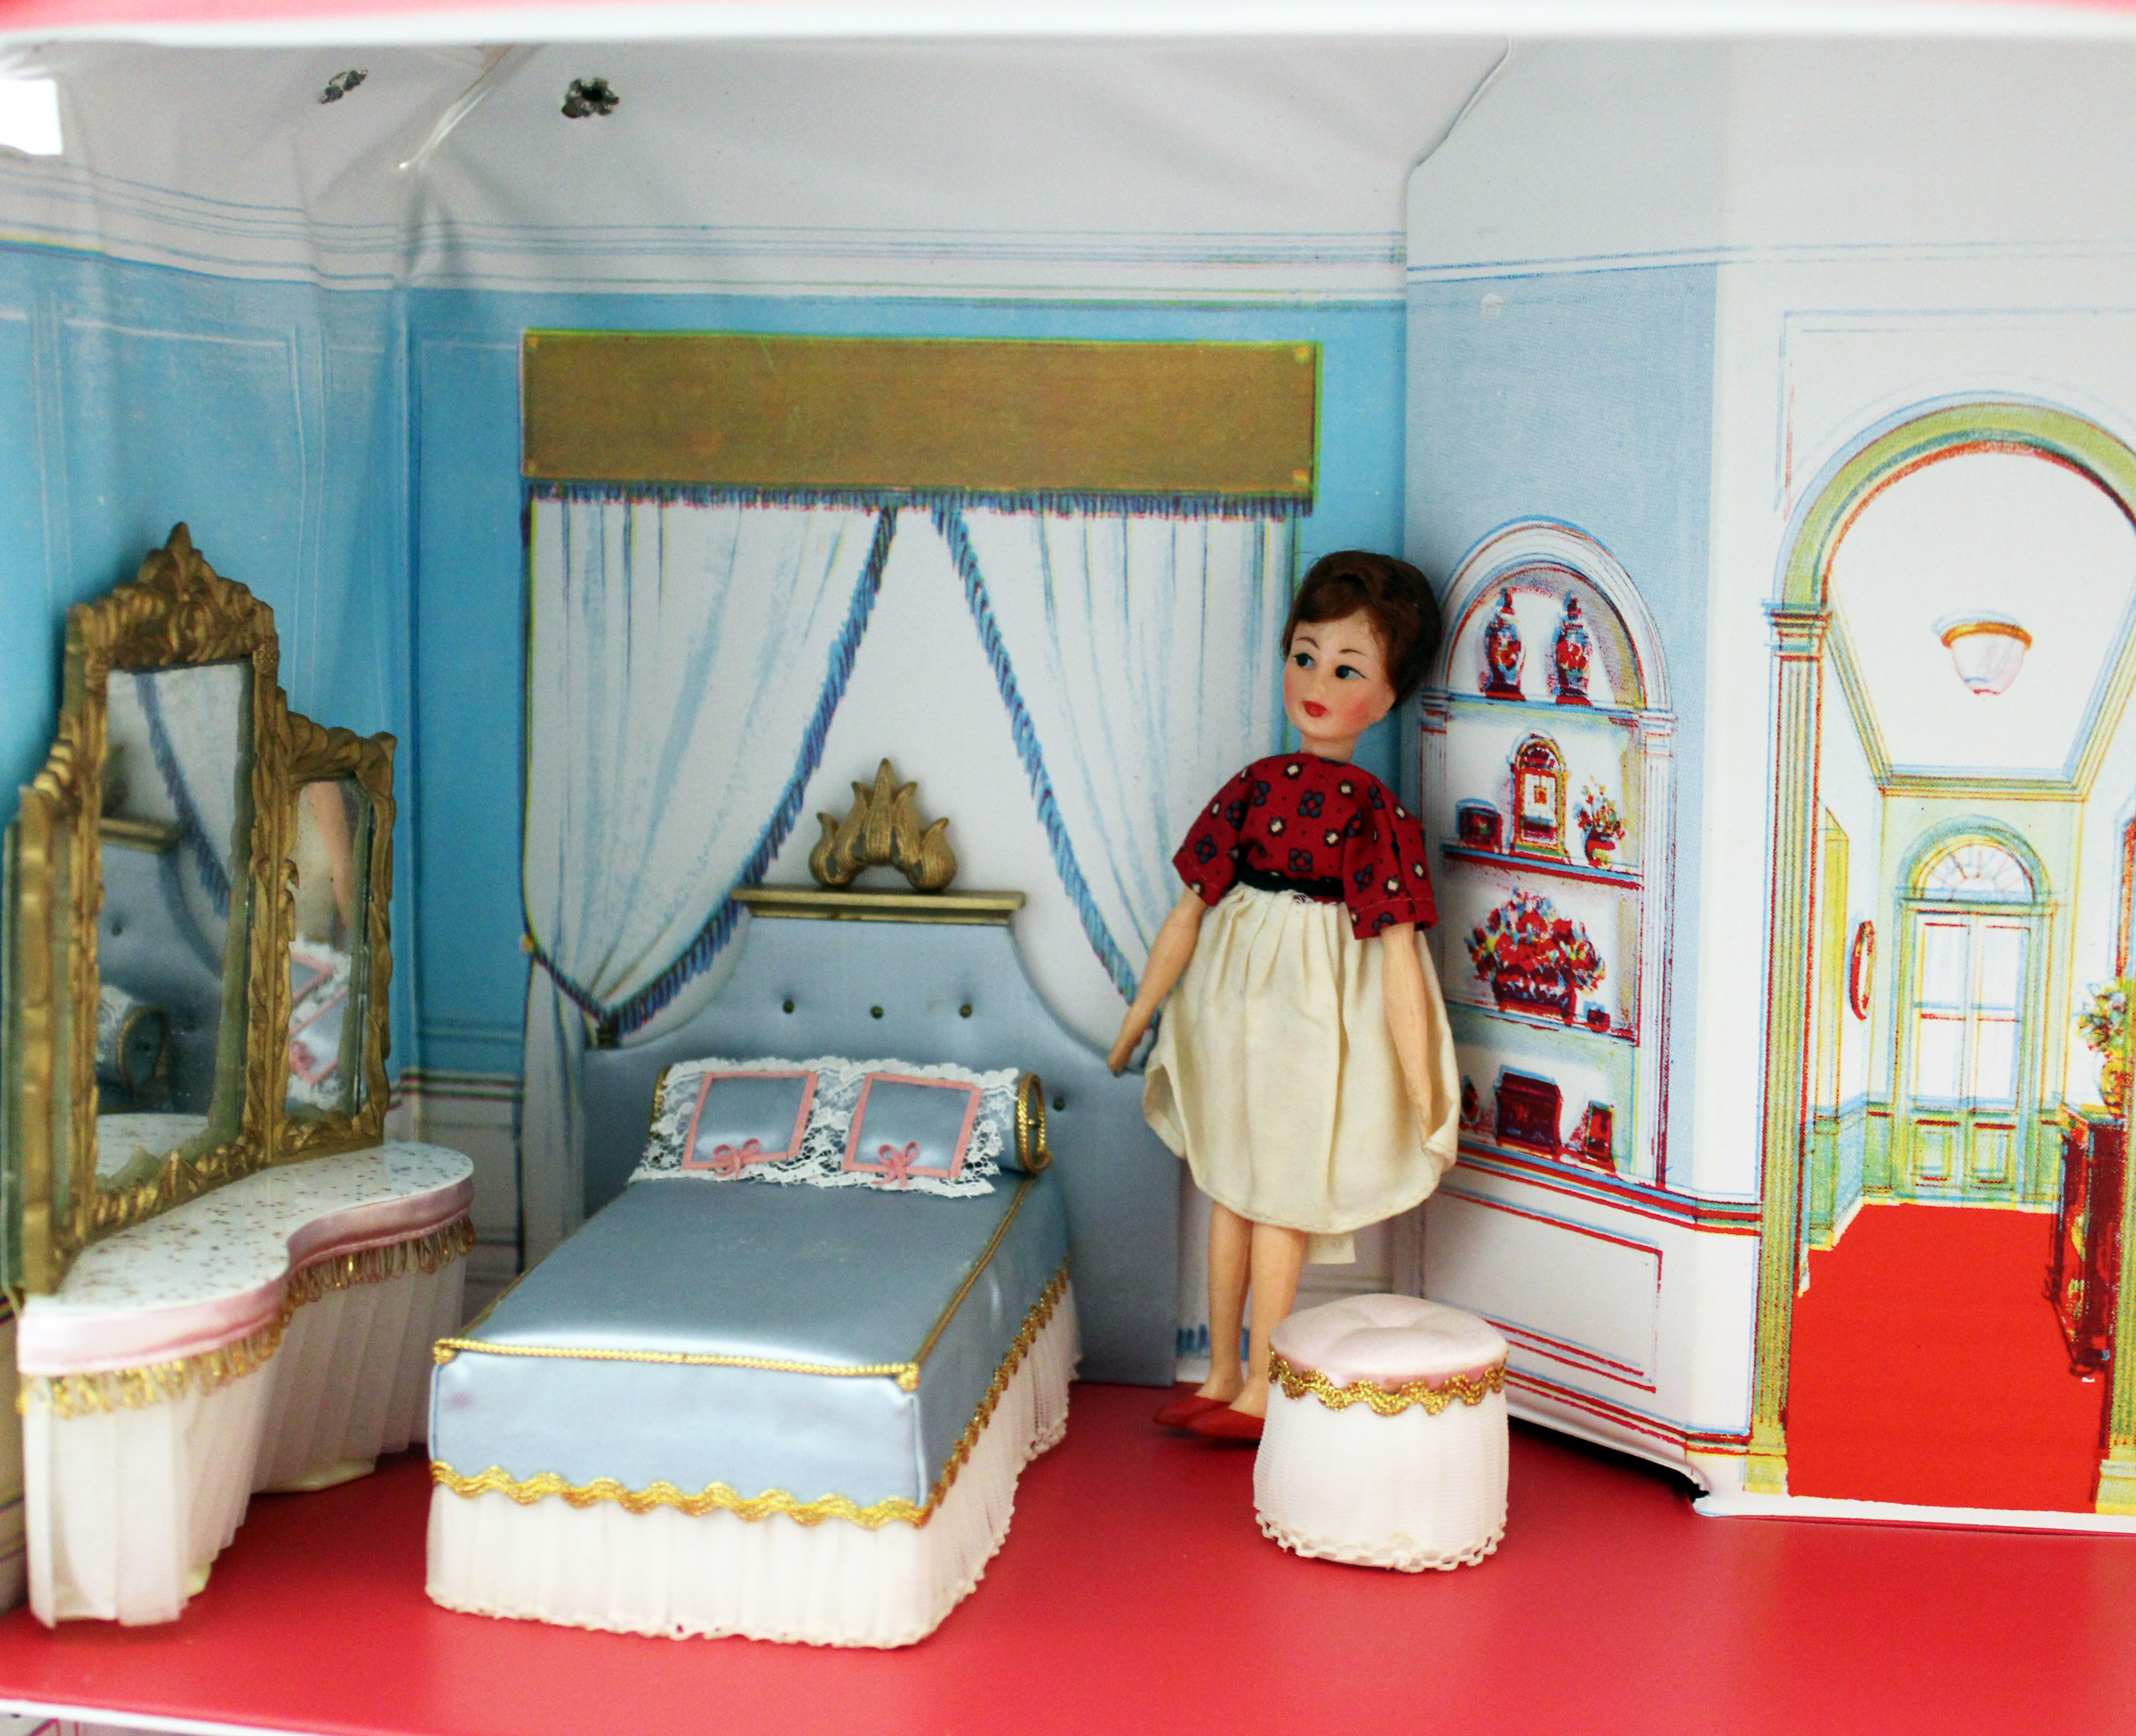 petite princess dollhouse